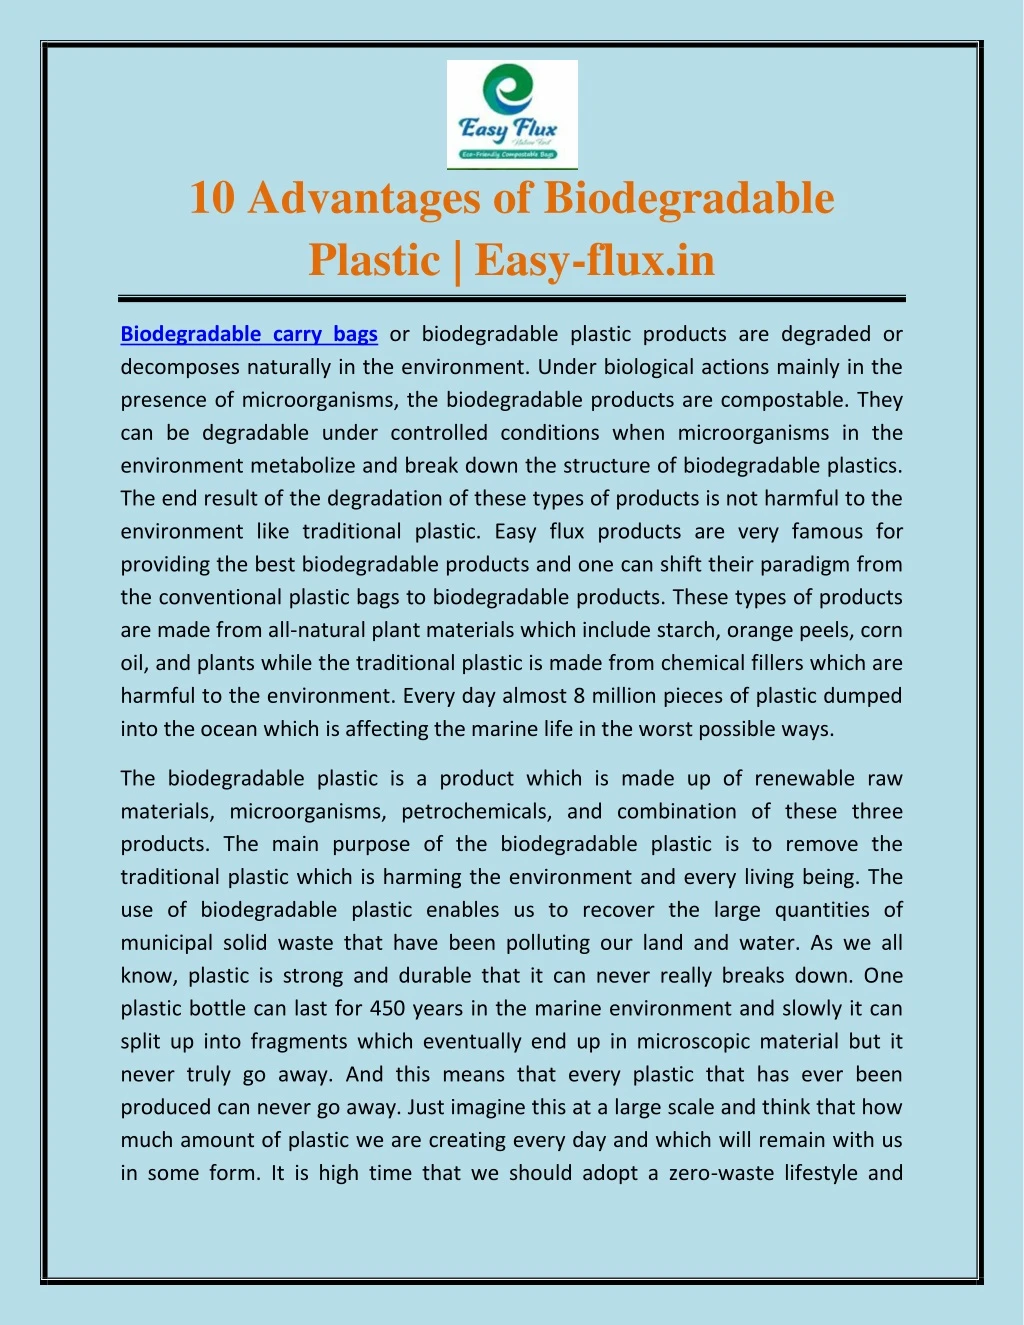 10 advantages of biodegradable plastic easy flux